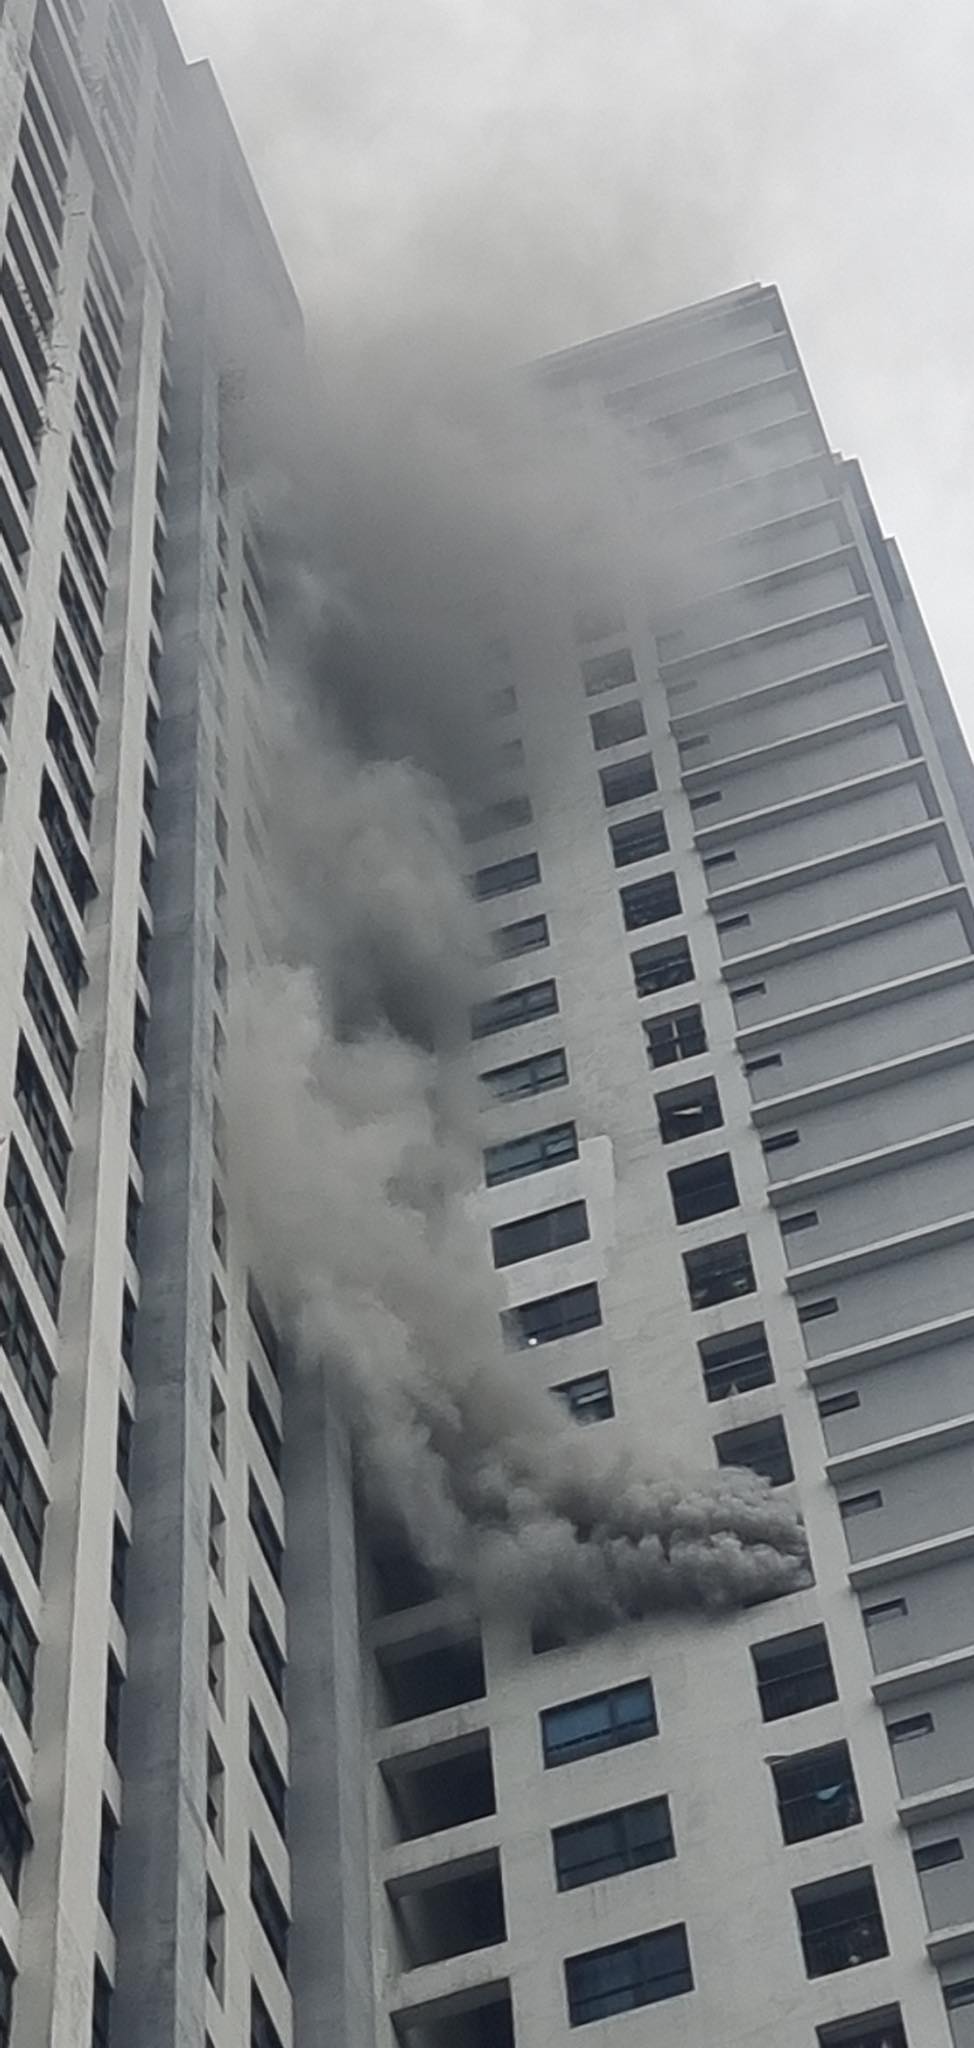 Cháy căn hộ tầng chung cư cao cấp ở Hà Nội, khói bốc nghi ngút - 1